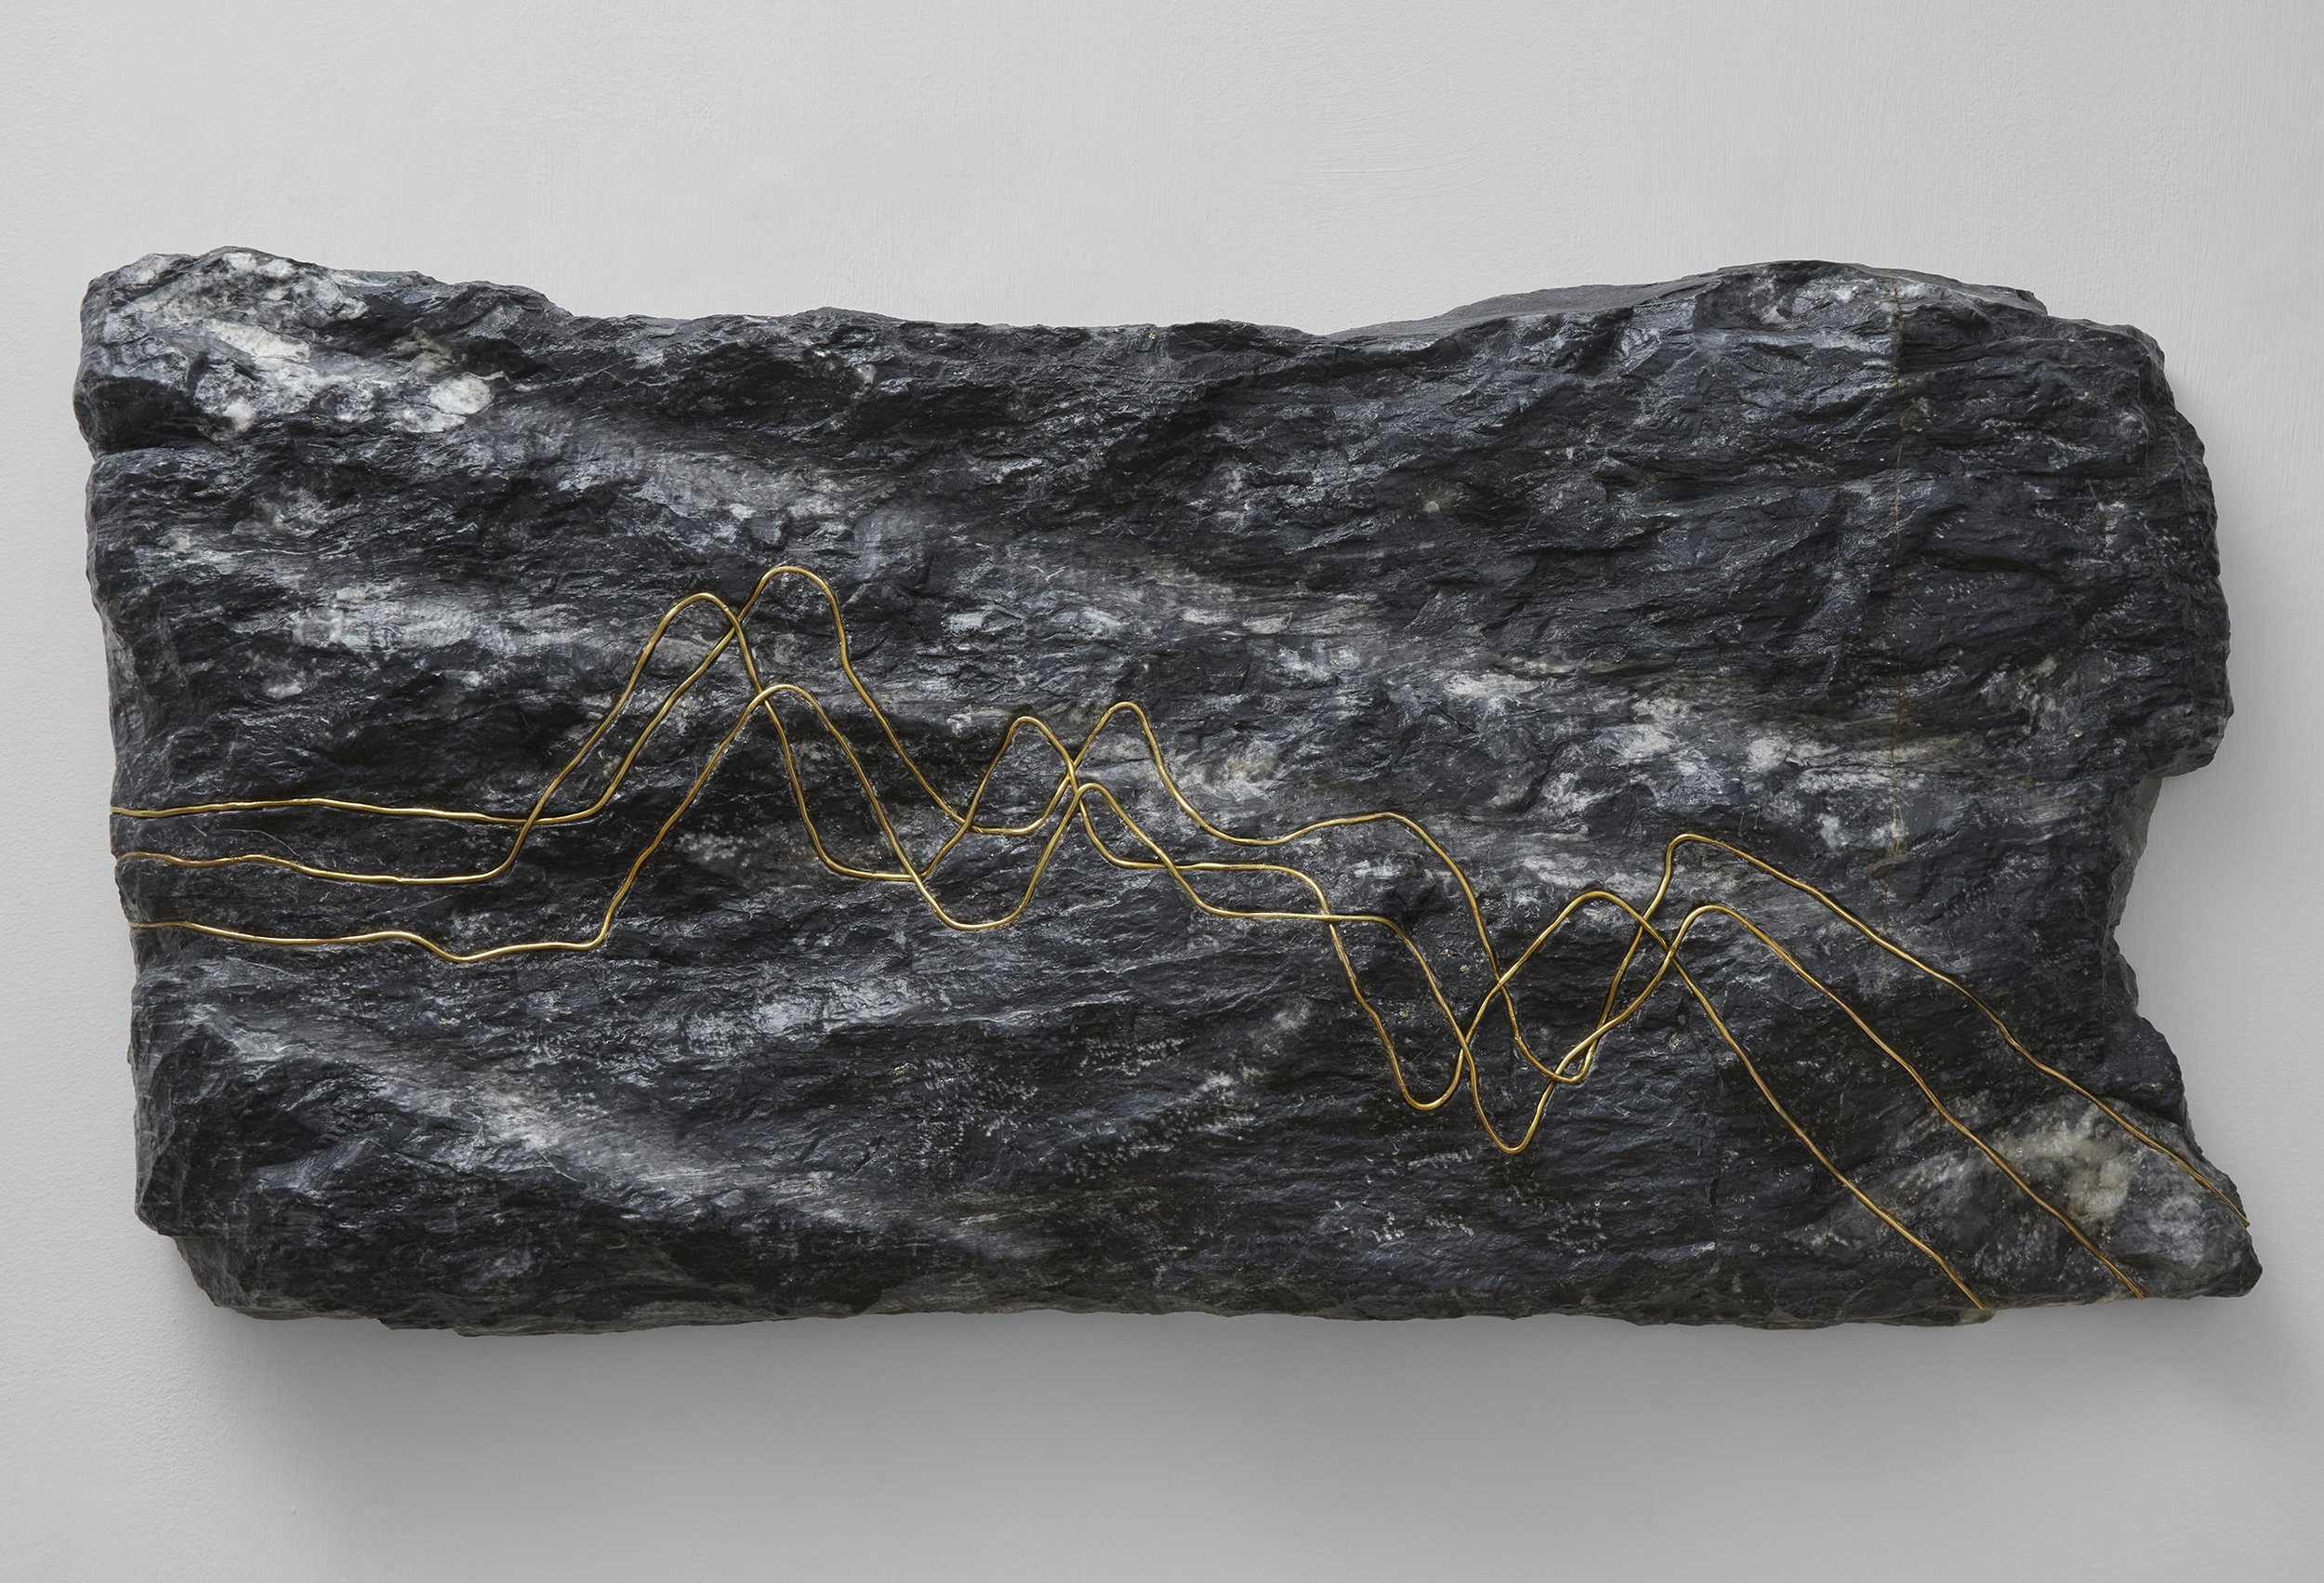  Frecuencias III, 2022. Mármol Santa Ana tallado con incrustaciones de alambre de cobre bañado en oro amarillo. 38 x 79 cm.   